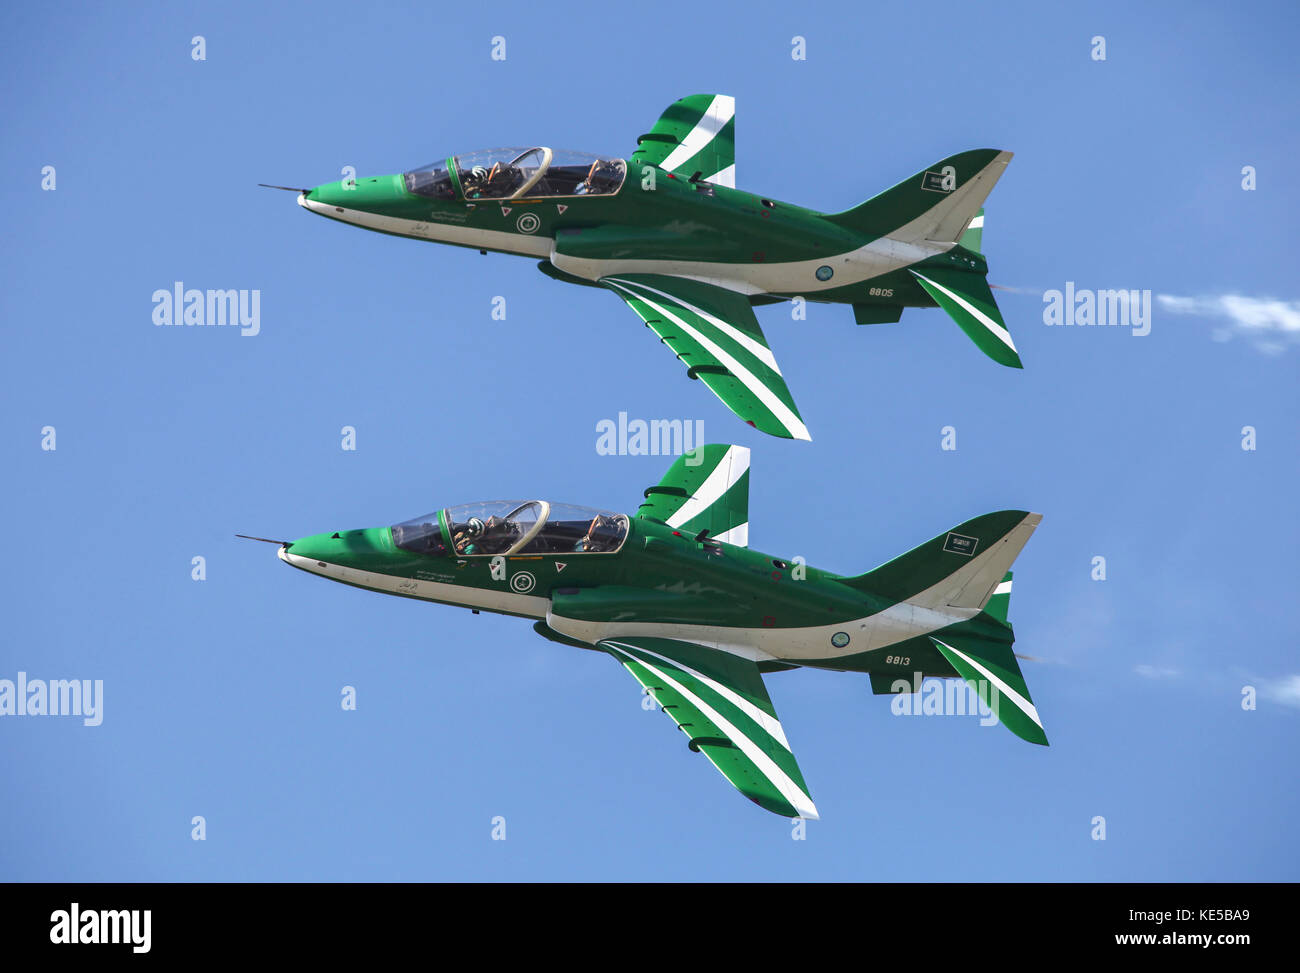 Coupes de l'équipe de voltige de l'arabie Hawks de l'armée de l'air de l'Arabie saoudite. Banque D'Images